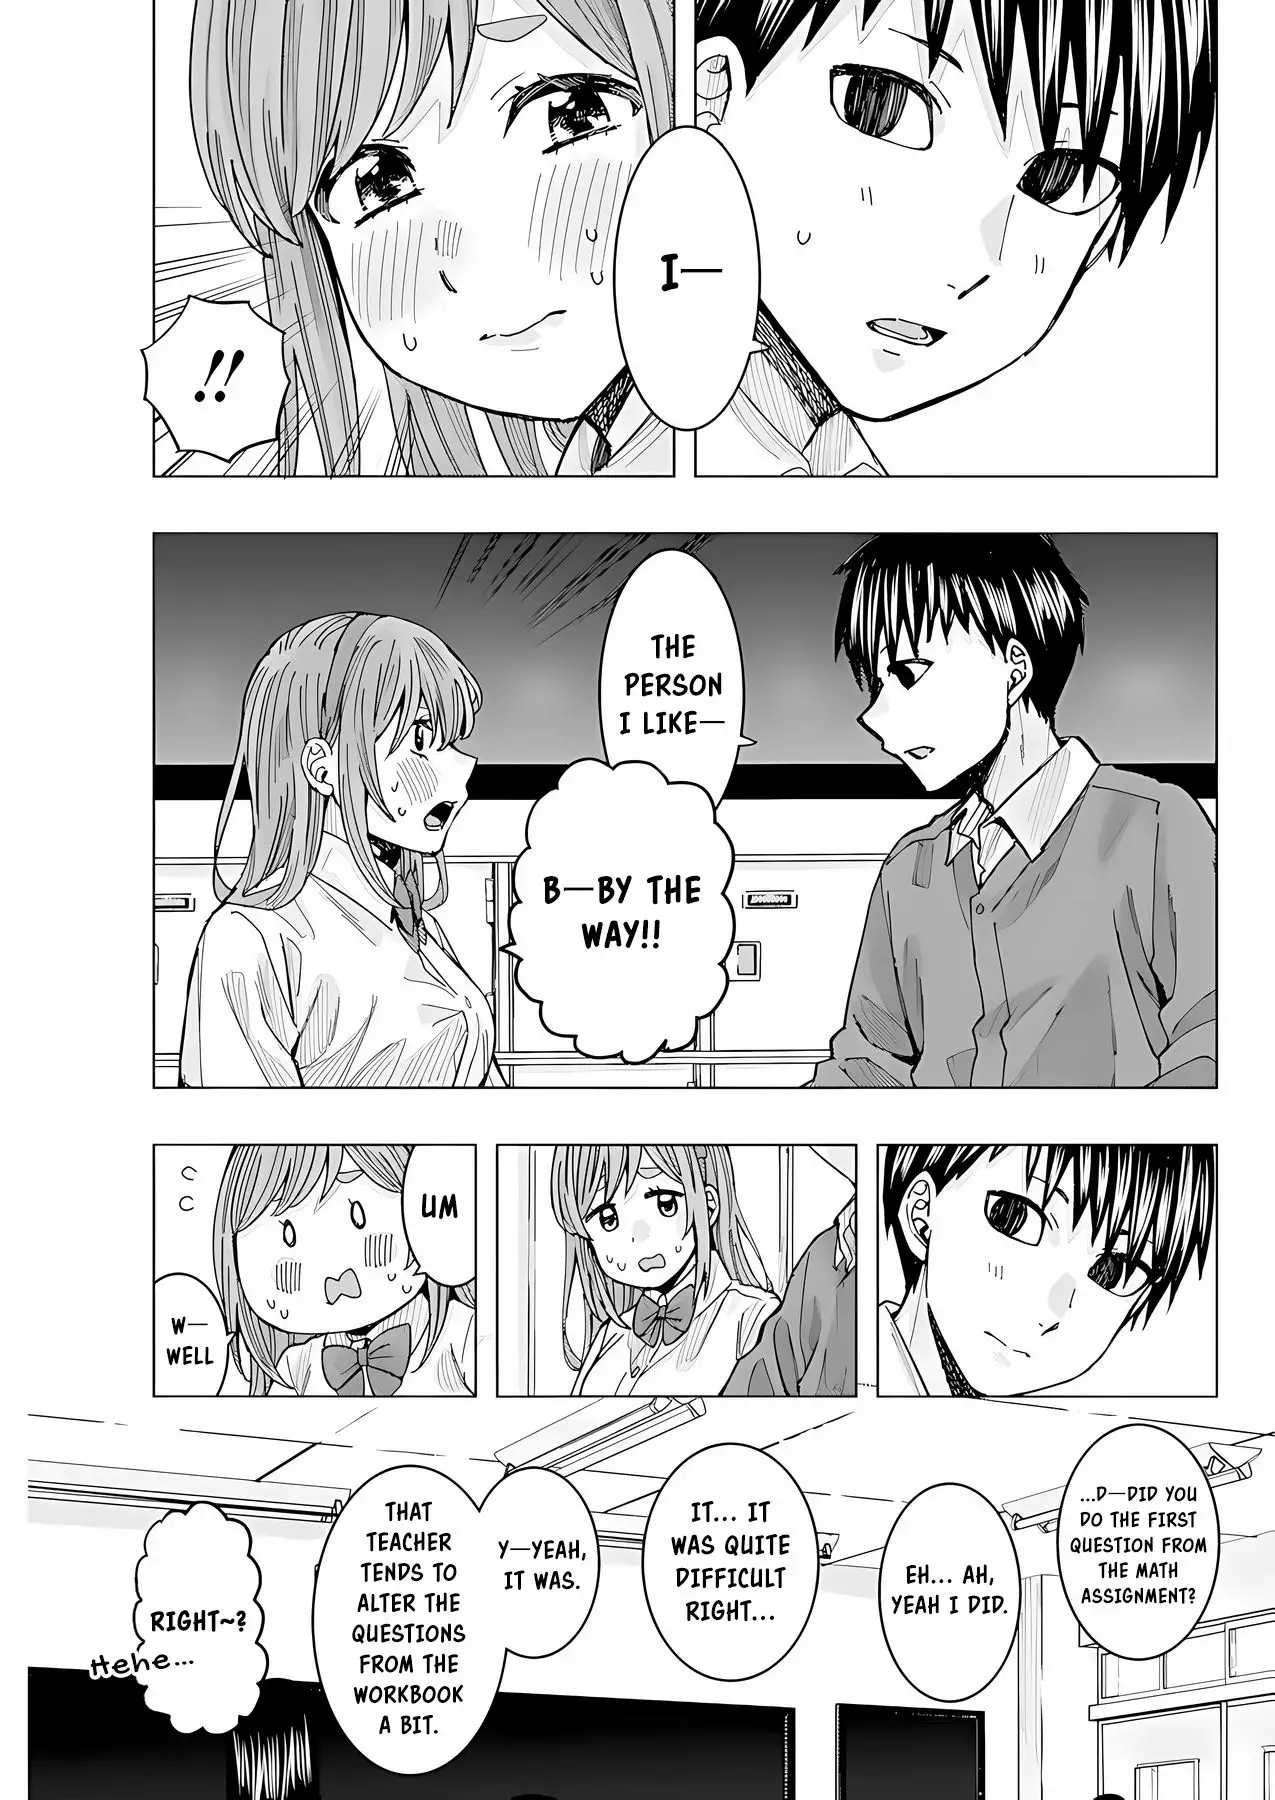 "nobukuni-San" Does She Like Me? - 21 page 10-8e35f103